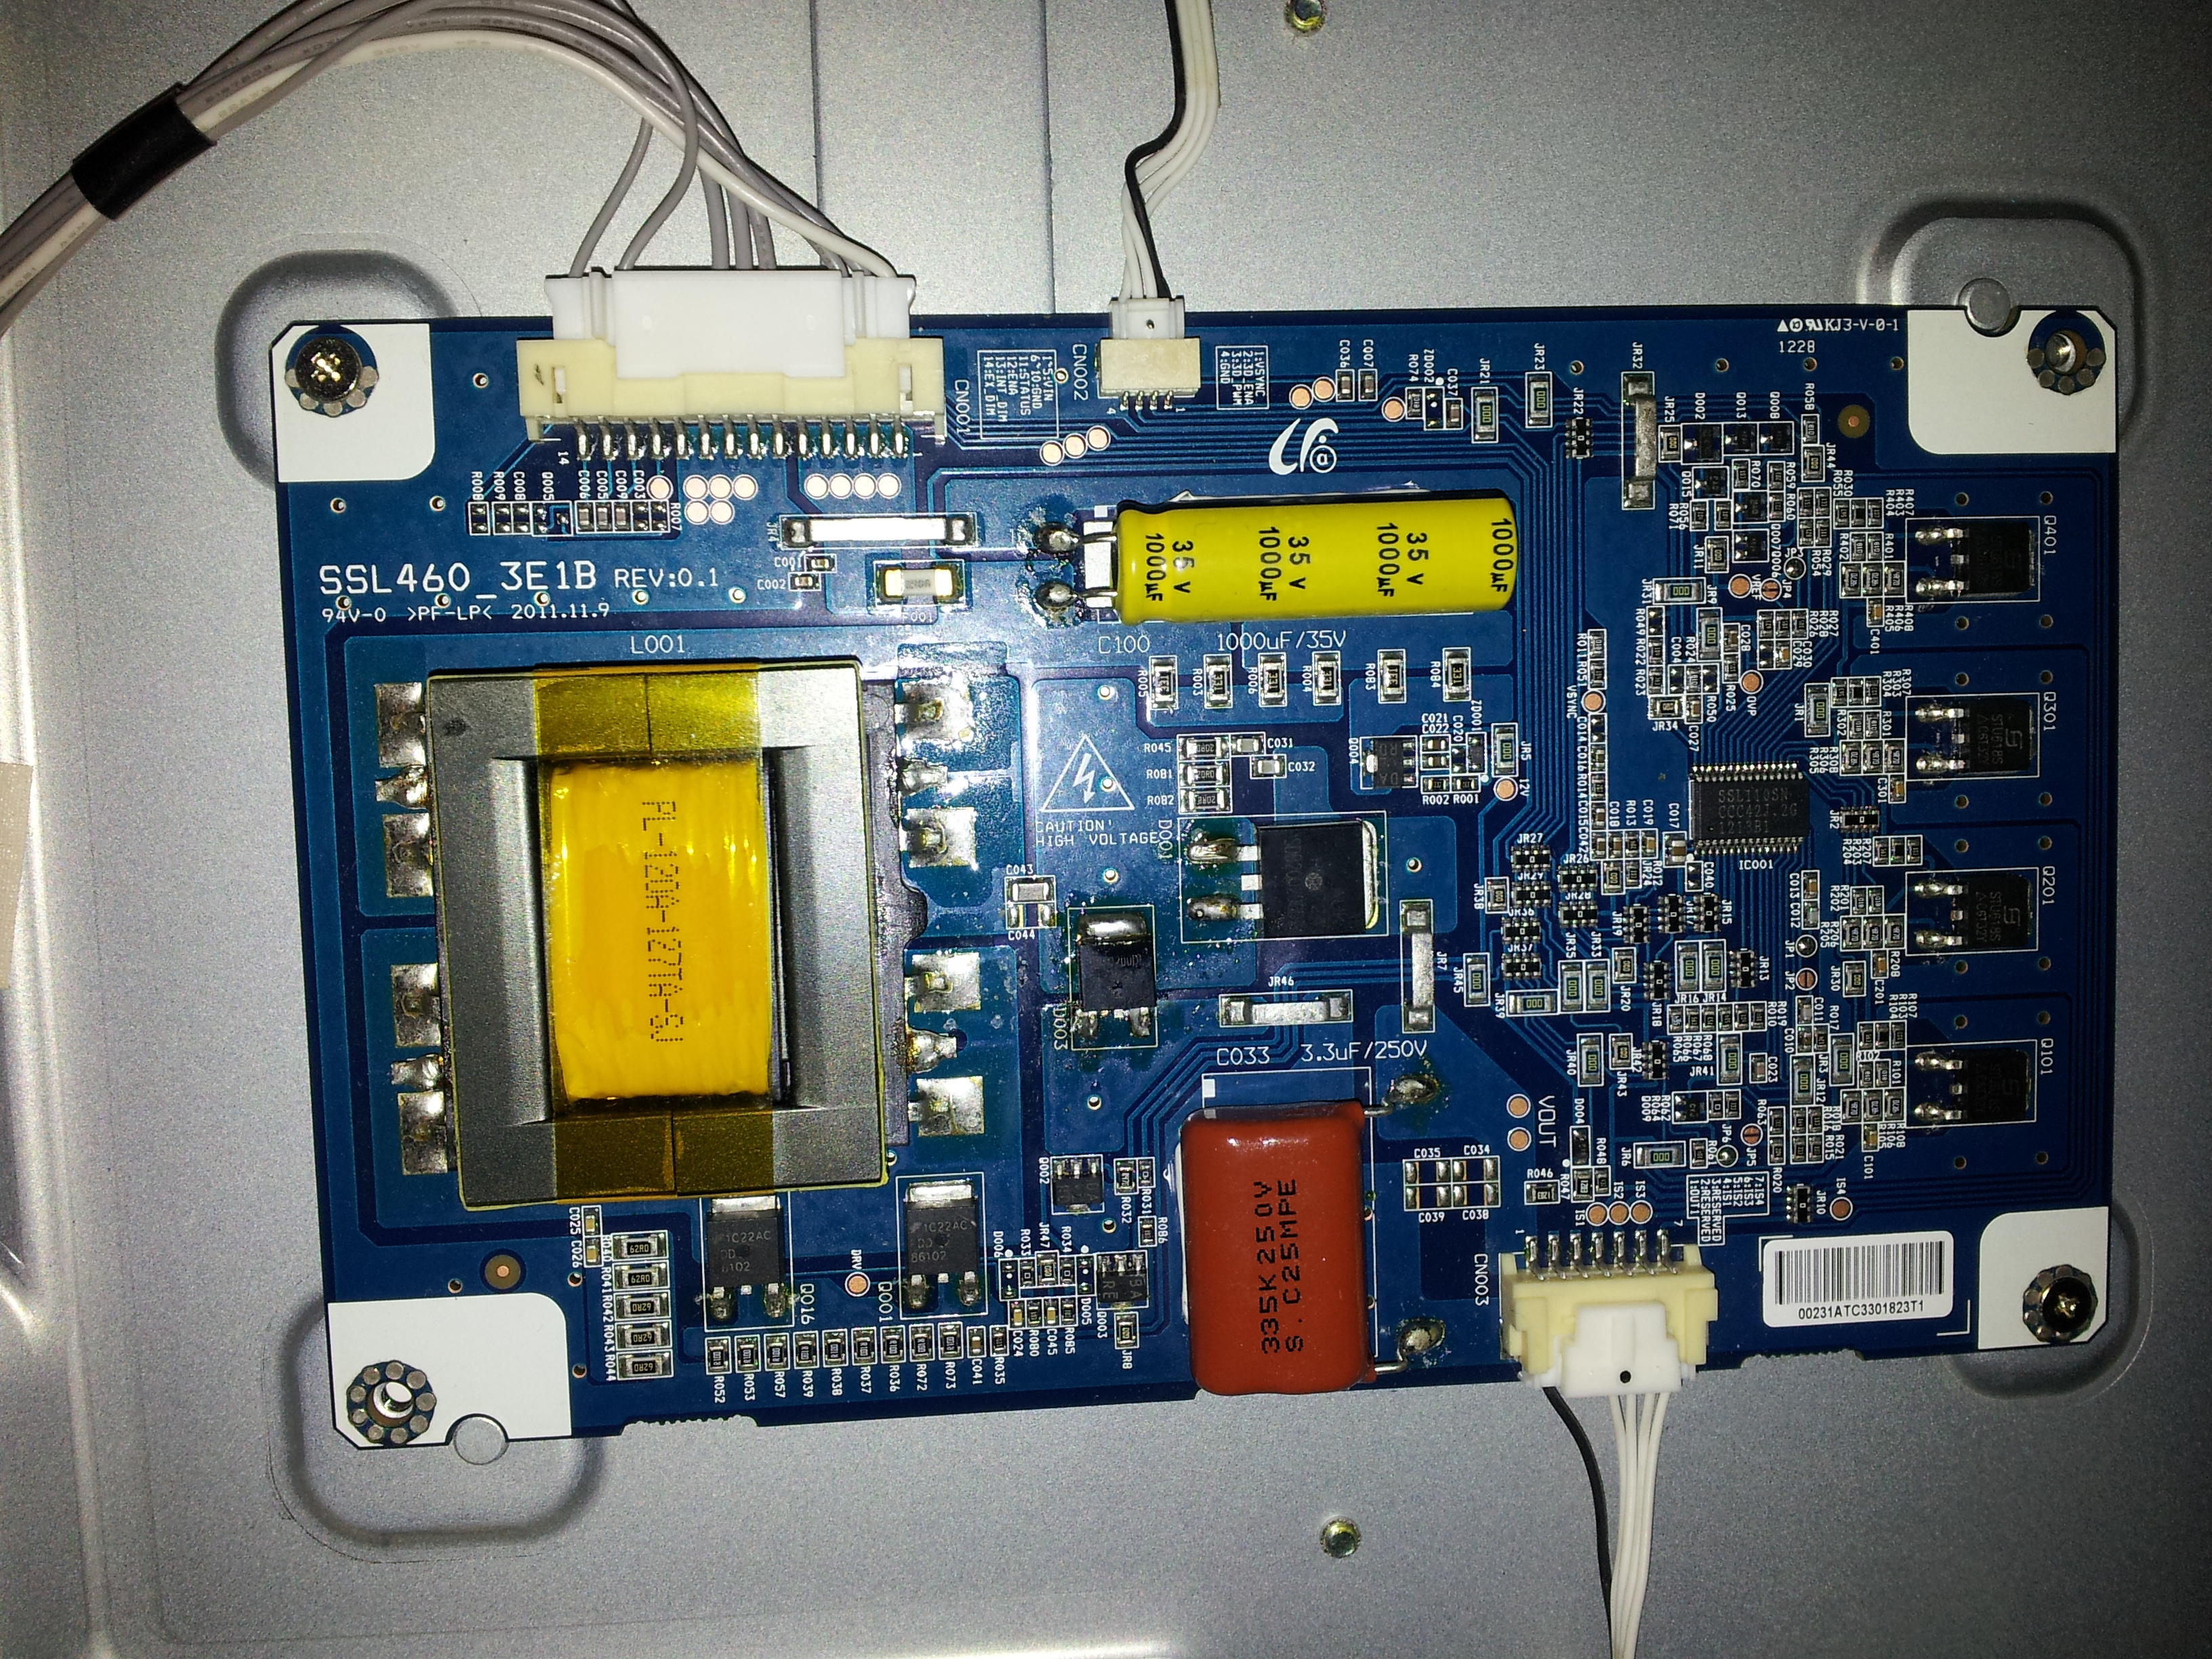 Toshiba 46TL963 Brak podświetlenia matrycy elektroda.pl